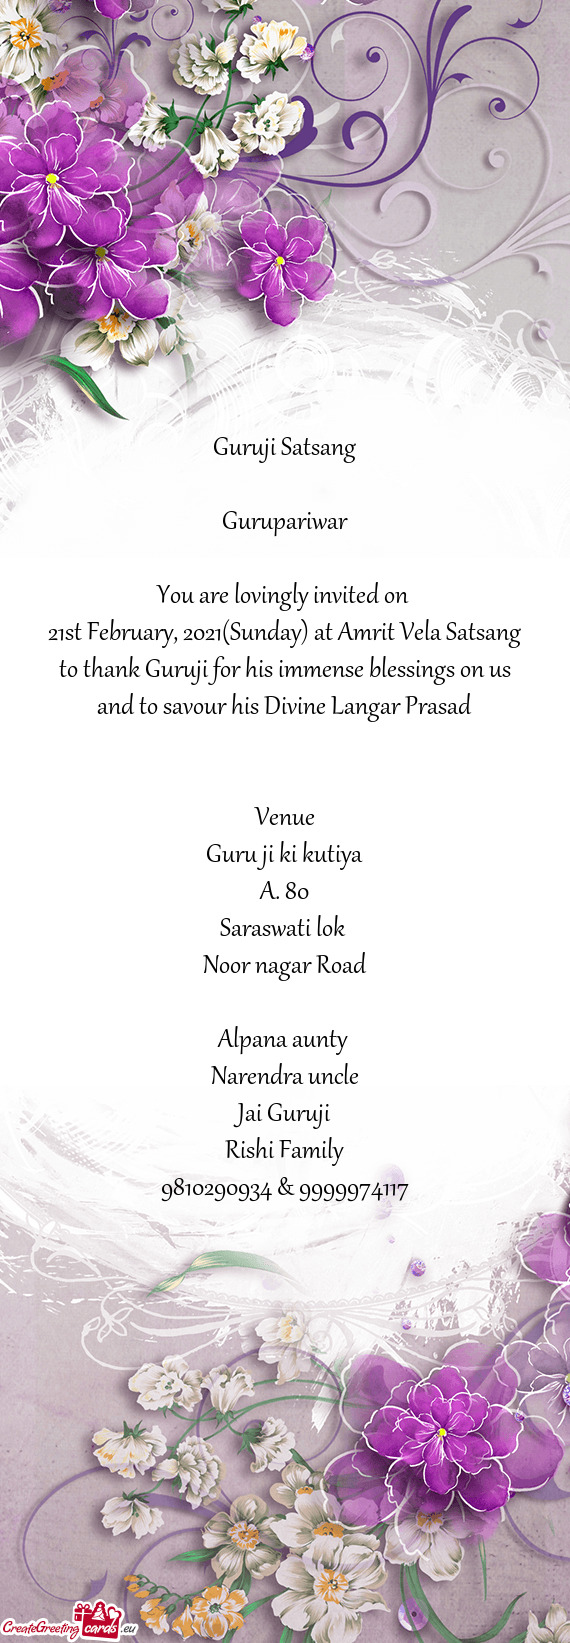 21st February, 2021(Sunday) at Amrit Vela Satsang